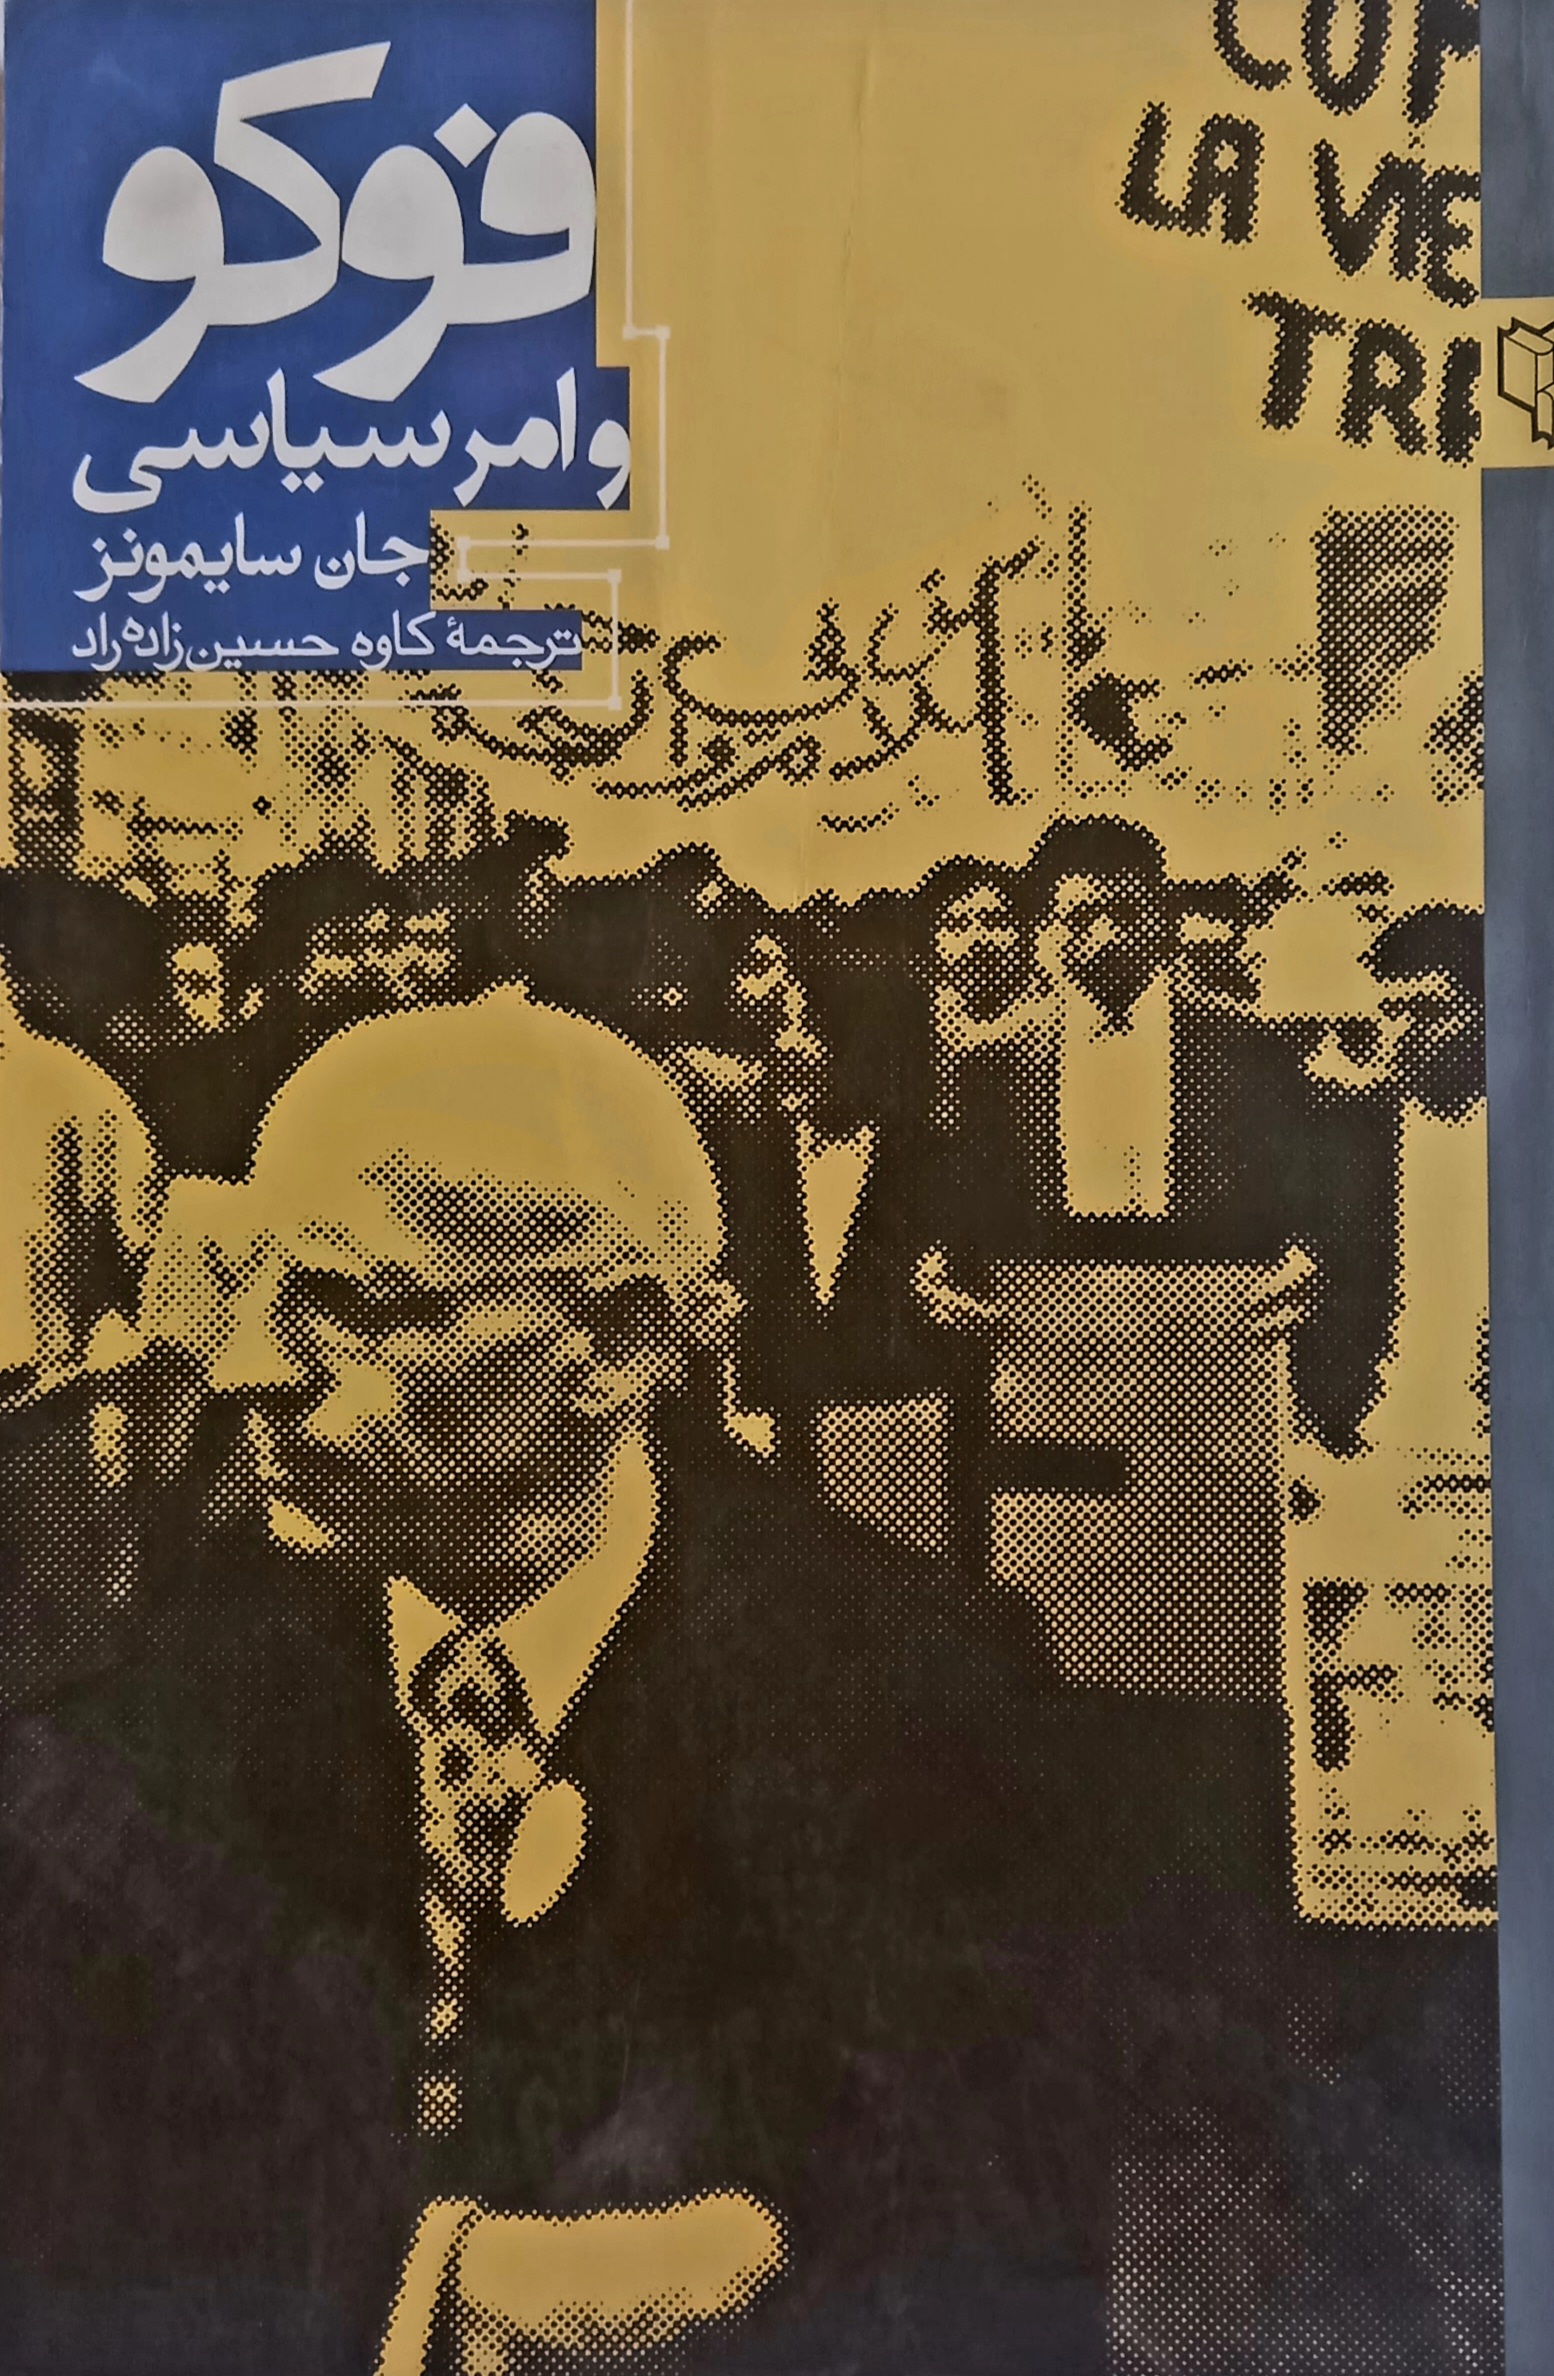 کتاب دست دوم فوکو و امر سیاسی. جان سایمون. مترجم کاوه حسینی زاده راد